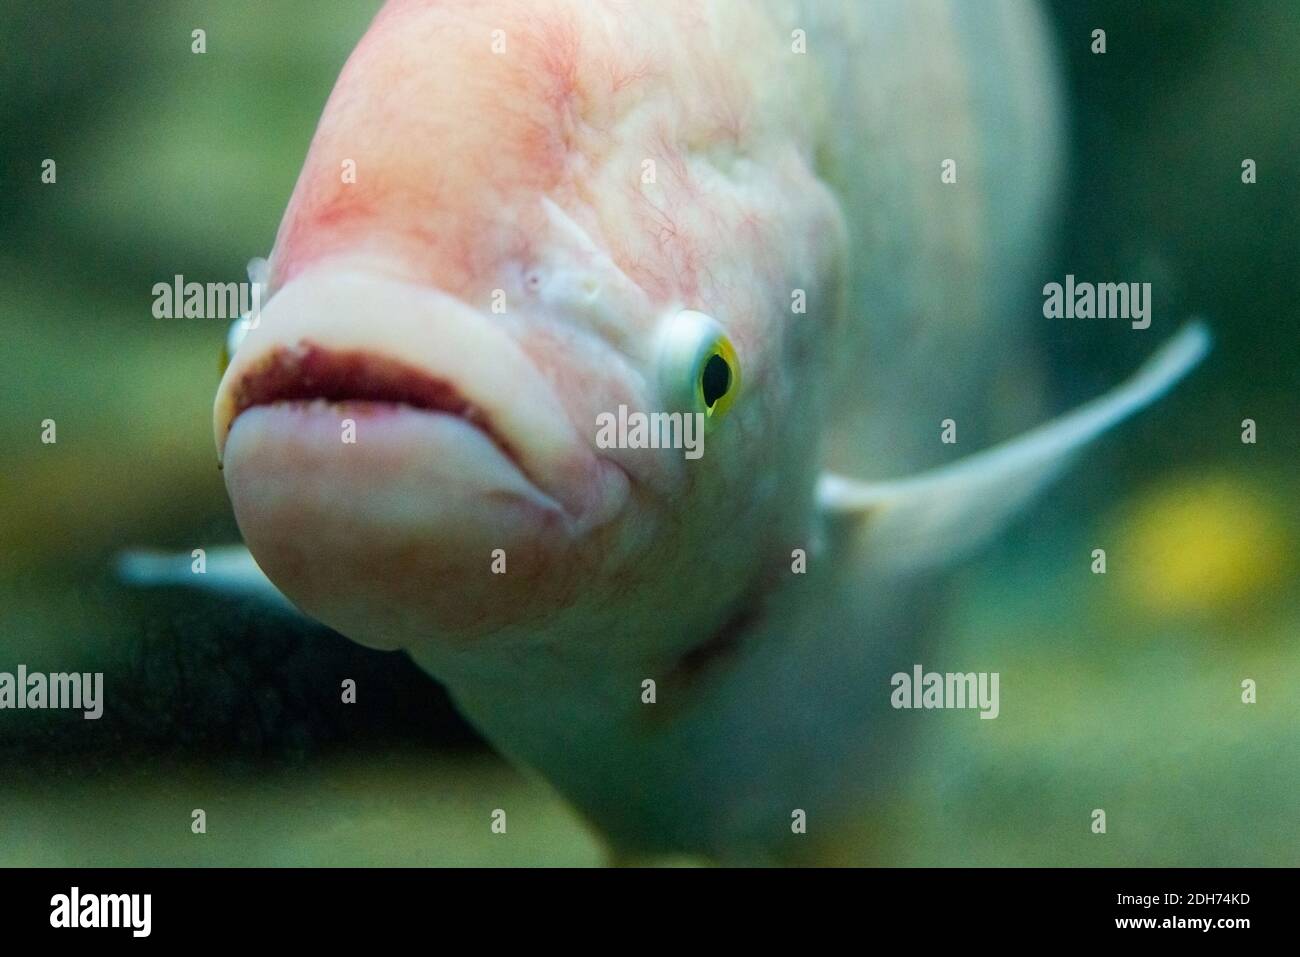 Face of Giant gourami fish or Osphronemus goramy. Stock Photo